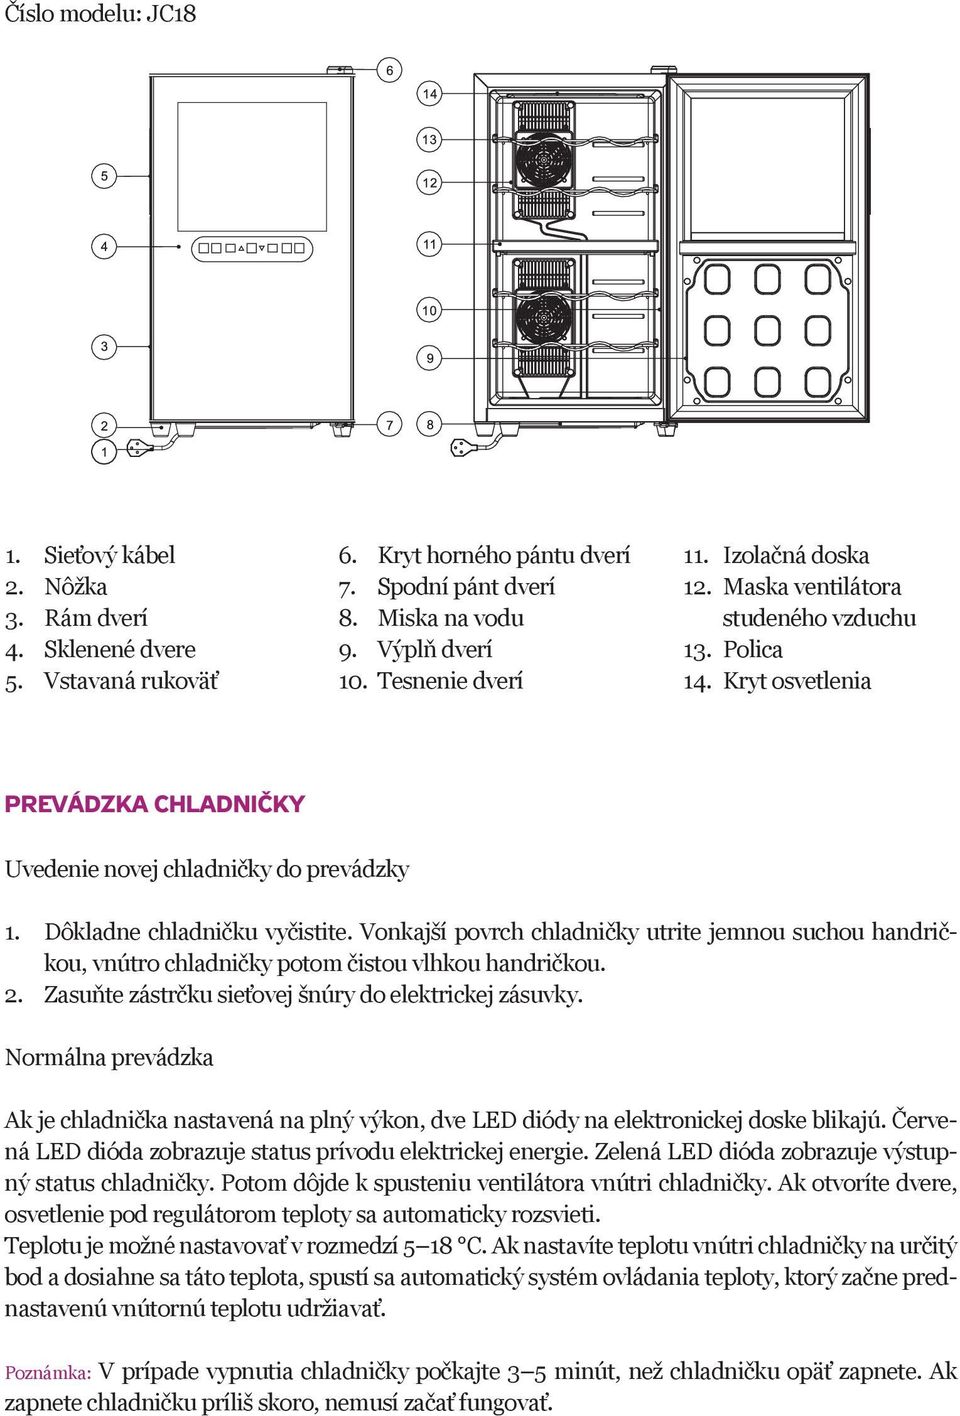 Vonkajší povrch chladničky utrite jemnou suchou handričkou, vnútro chladničky potom čistou vlhkou handričkou. 2. Zasuňte zástrčku sieťovej šnúry do elektrickej zásuvky.